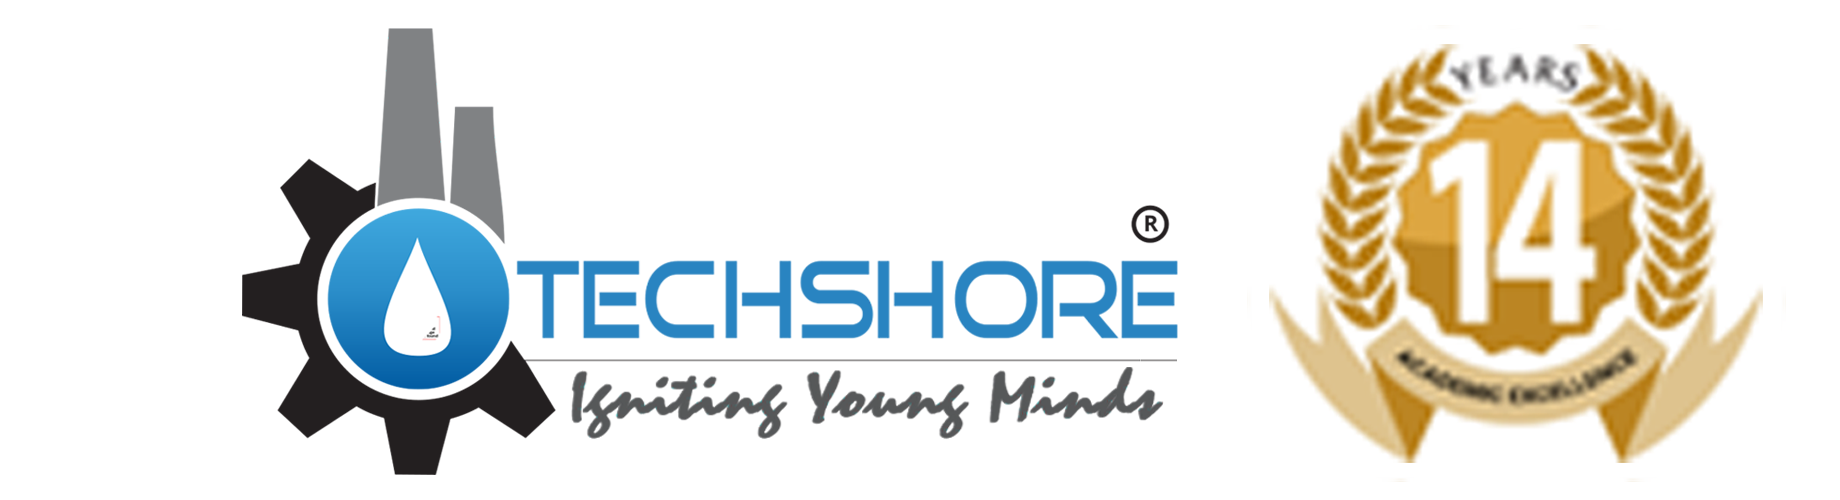 Techshore logo